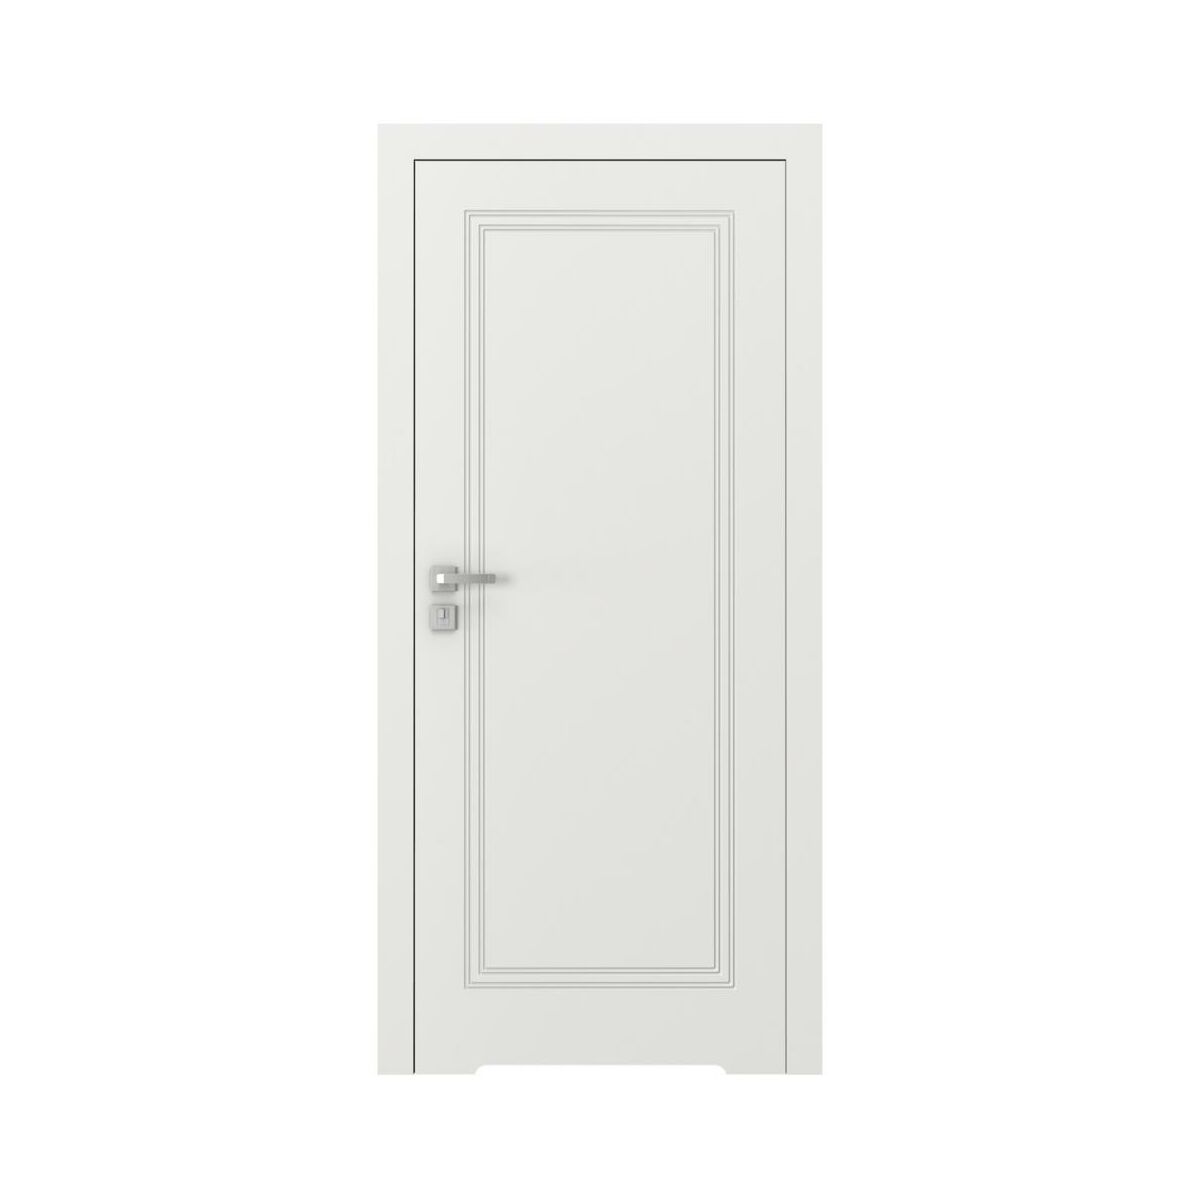 Drzwi wewnętrzne bezprzylgowe łazienkowe z podcięciem wentylacyjnym Vector U Białe 70 Prawe Porta